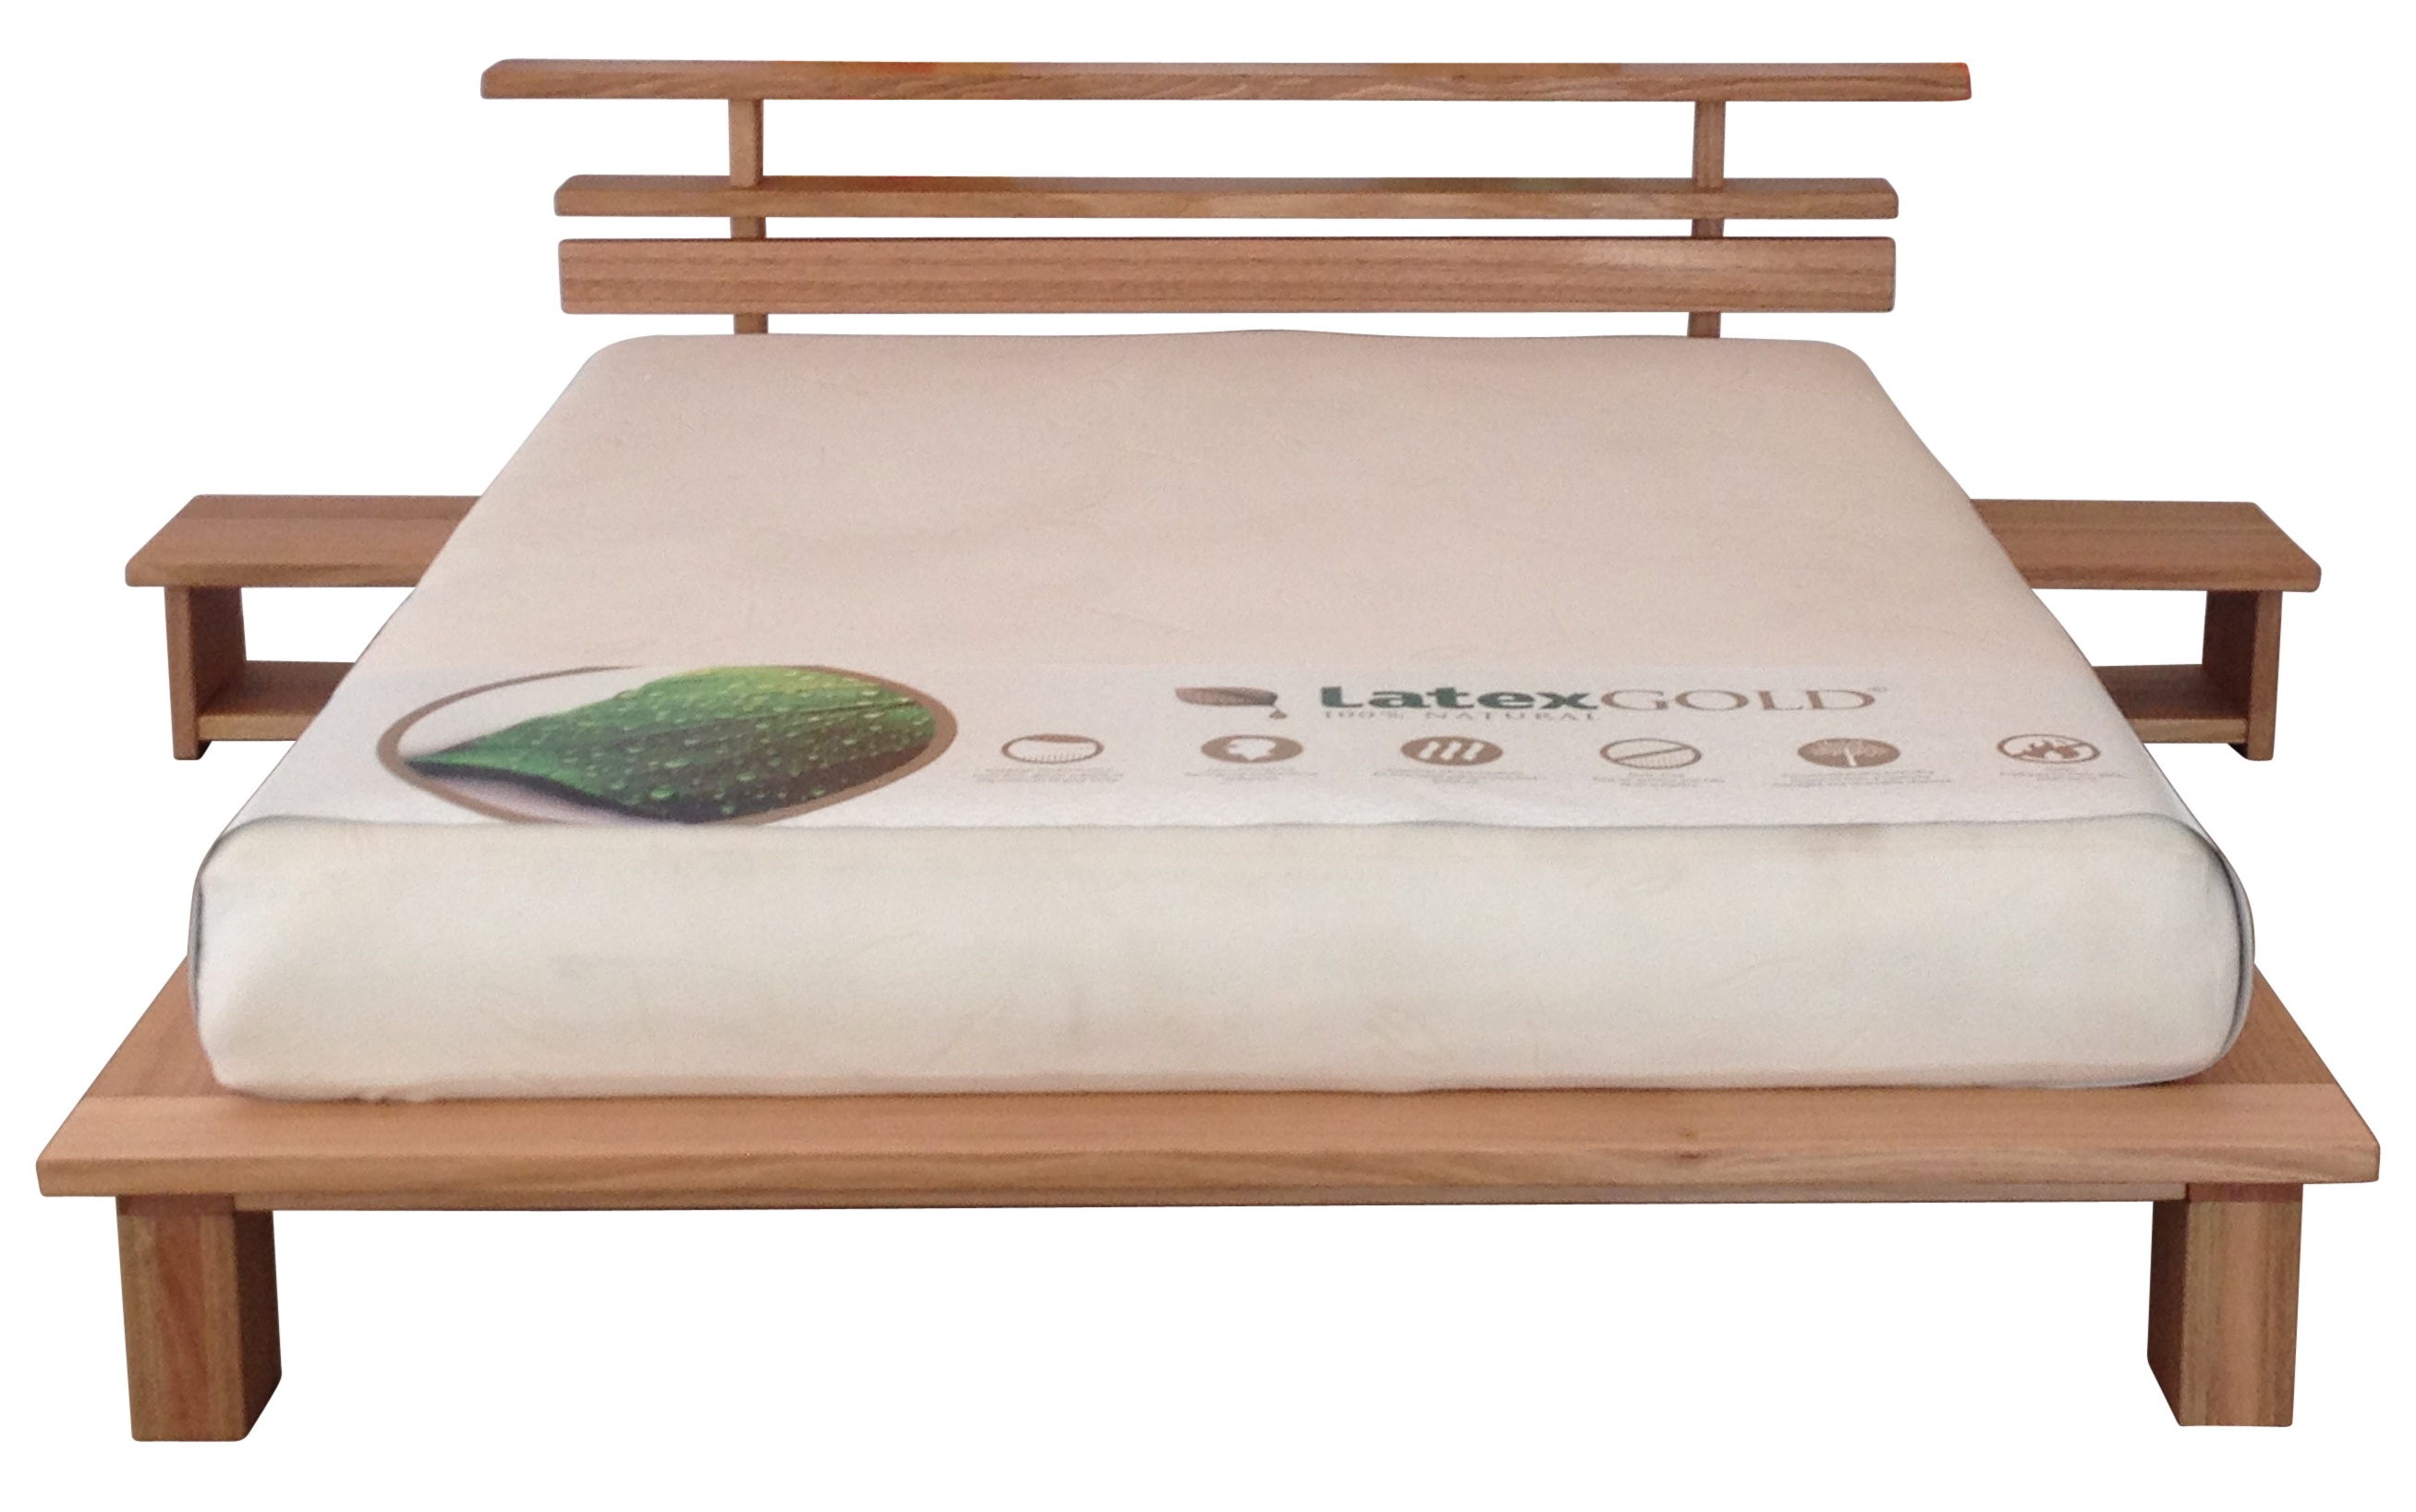 single layer latex mattress